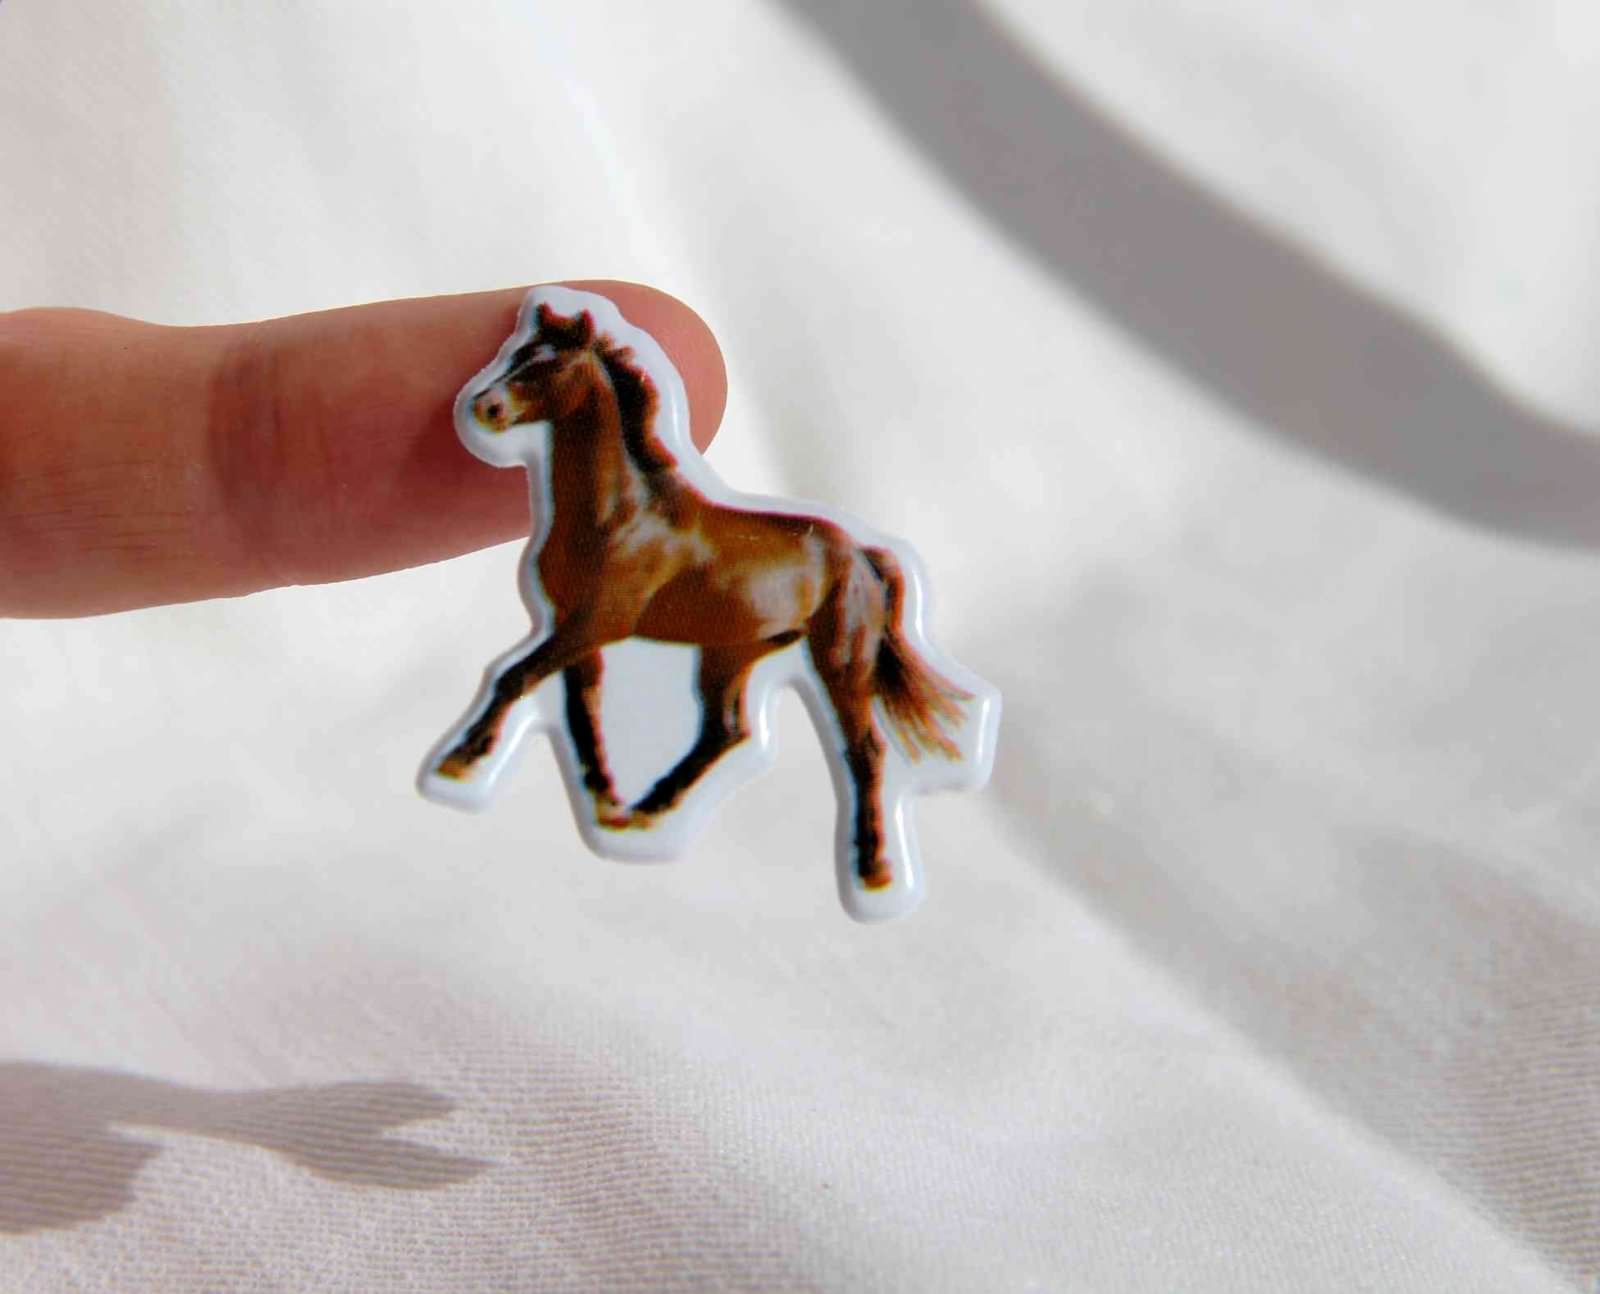 cheval chevaux gommette autocollante sticker adhesif enfants decoration scrapbooking detail JF 1203